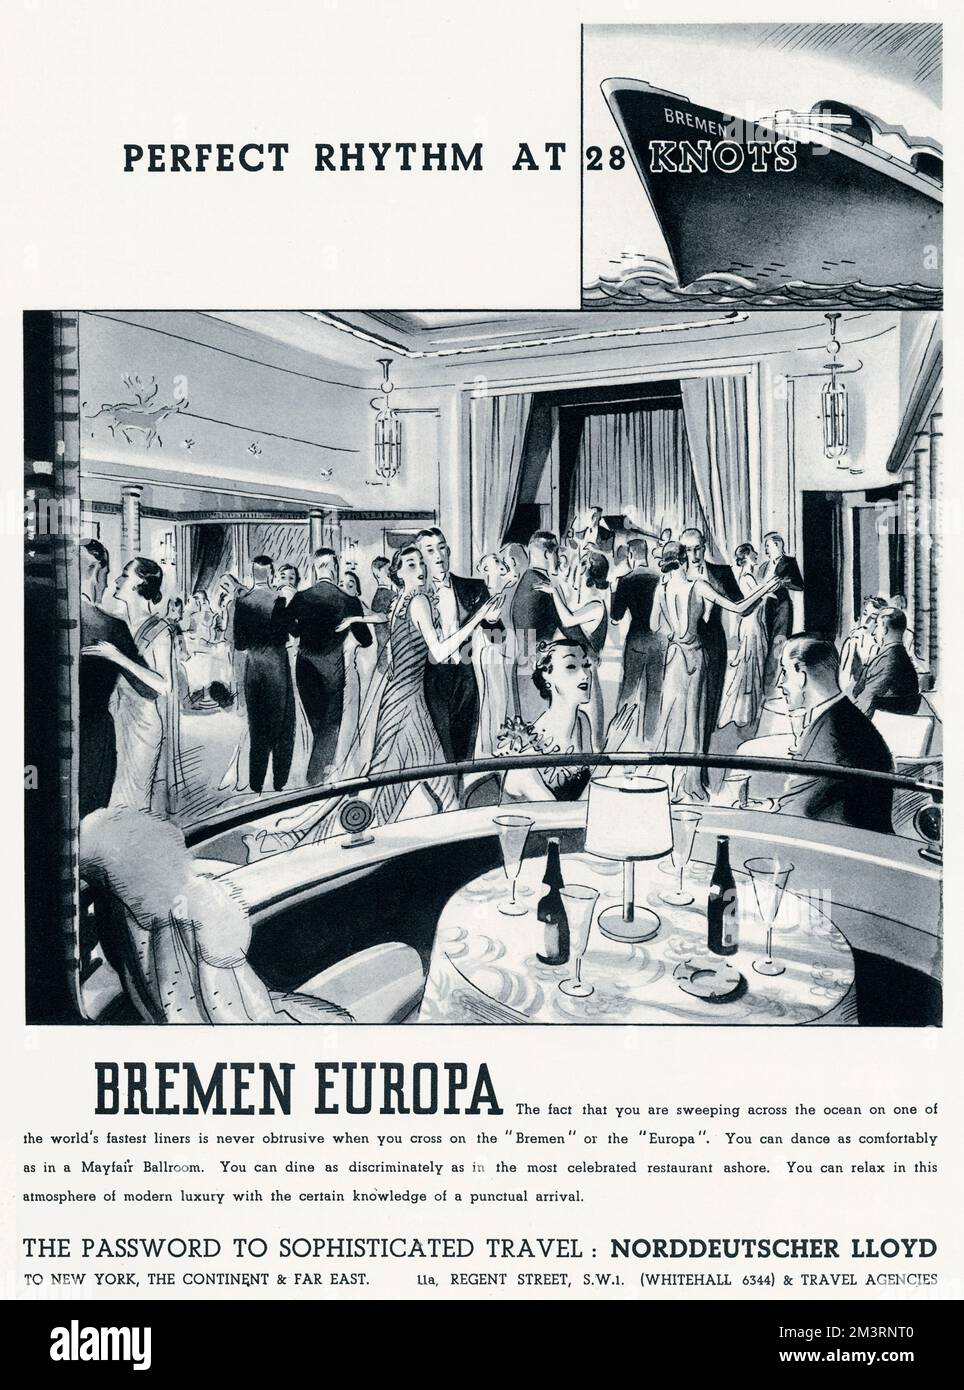 Die in Deutschland gebaute SS Bremen und ihr etwas kleineres Schwesterschiff SS Europa, später SS Libert&#x9b20;waren beide Hochgeschwindigkeitsdampffahrten nach New York, dem Kontinent und Fernost. Datum: 1937 Stockfoto